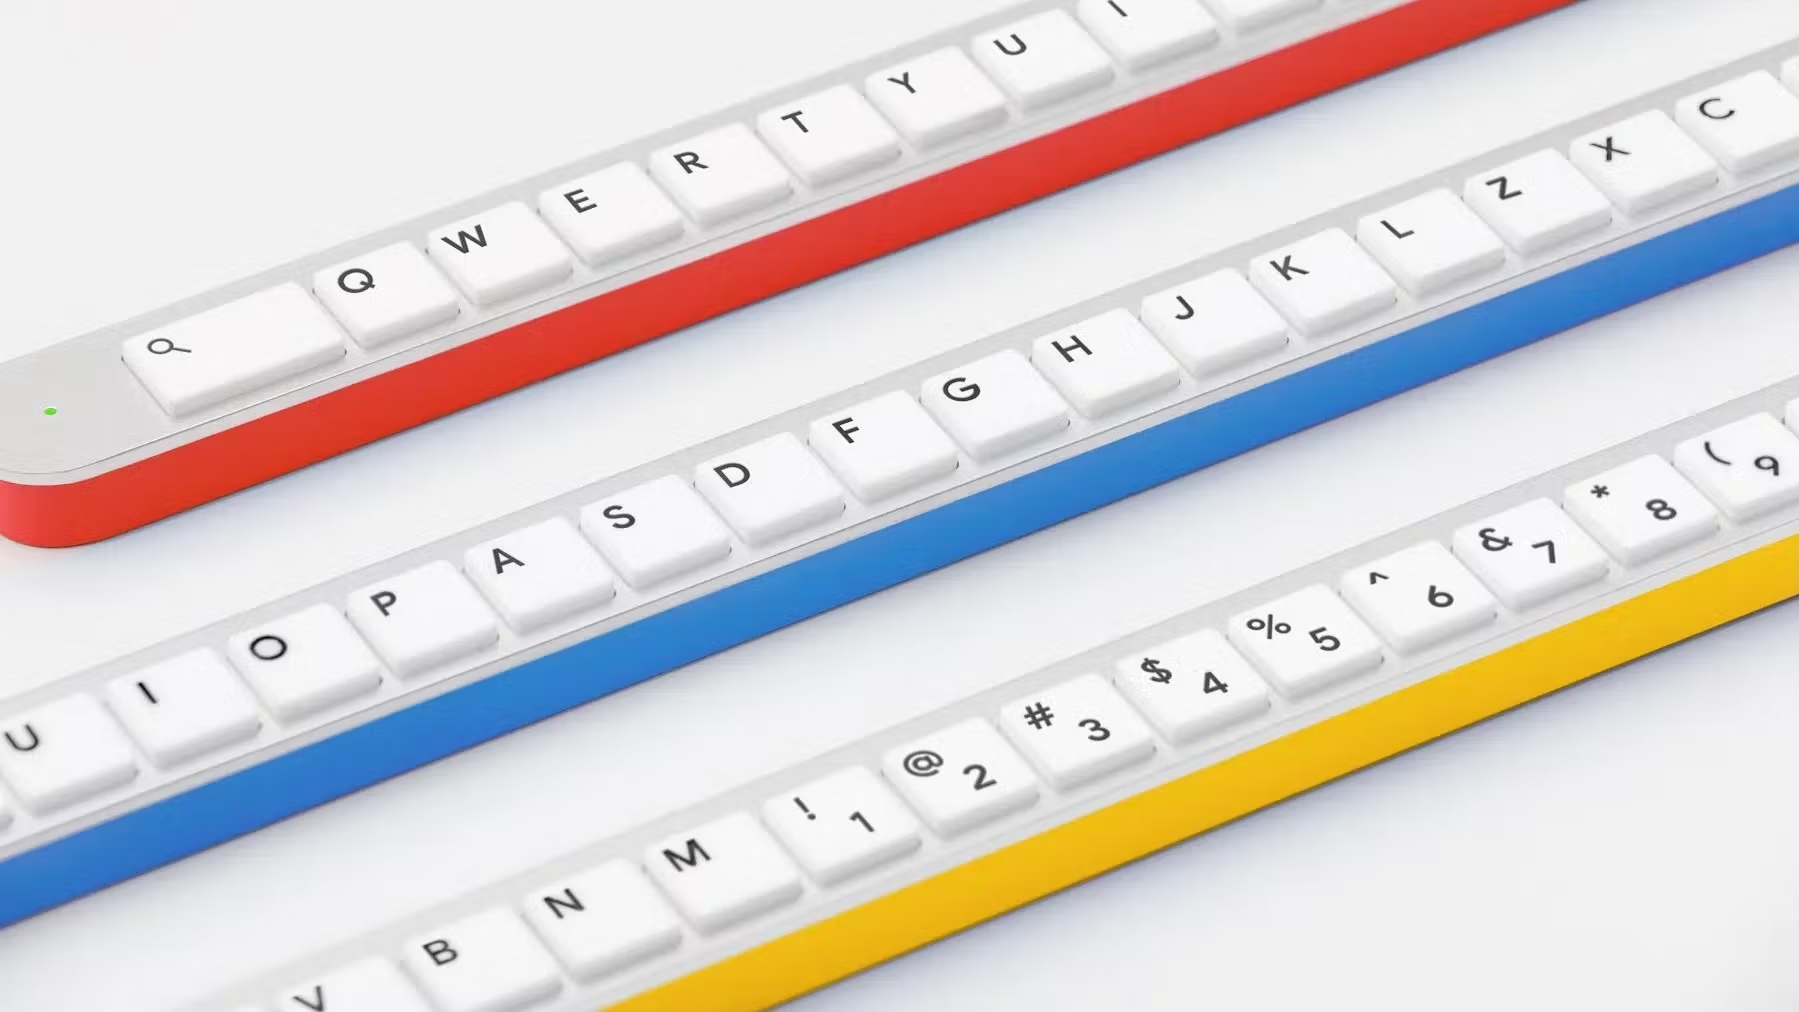 Google ra mắt bàn phím chỉ có một hàng nút duy nhất, dài 1,6 mét - Ảnh 1.